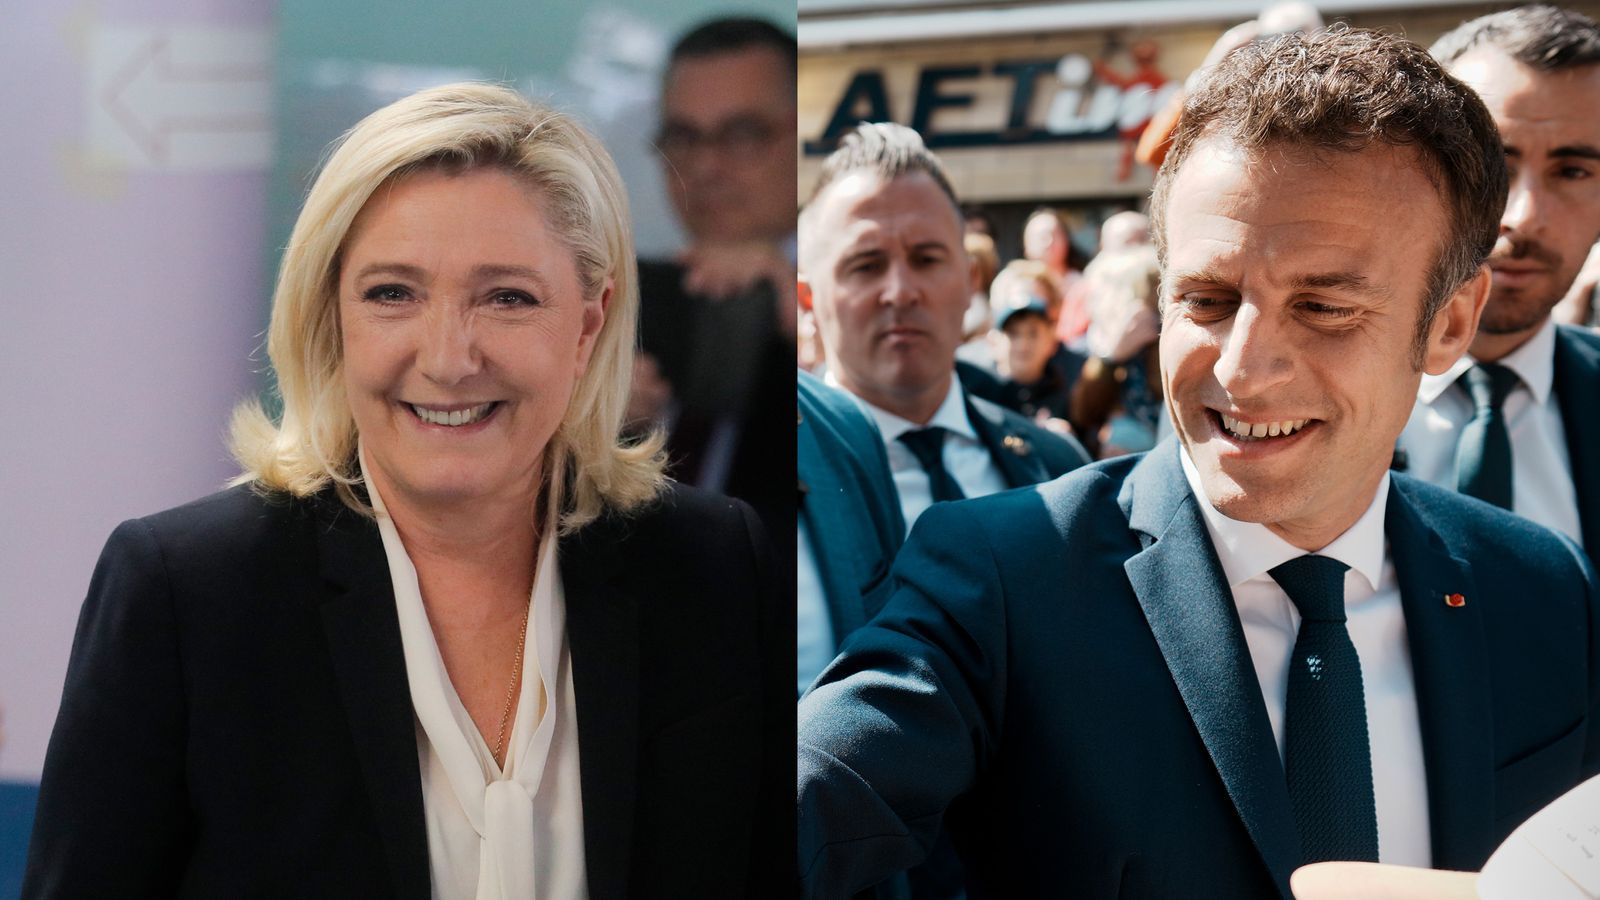 Eleições francesas: a batalha entre Macron e Le Pen atinge seu clímax quando a França vota em seu próximo presidente |  Noticias do mundo